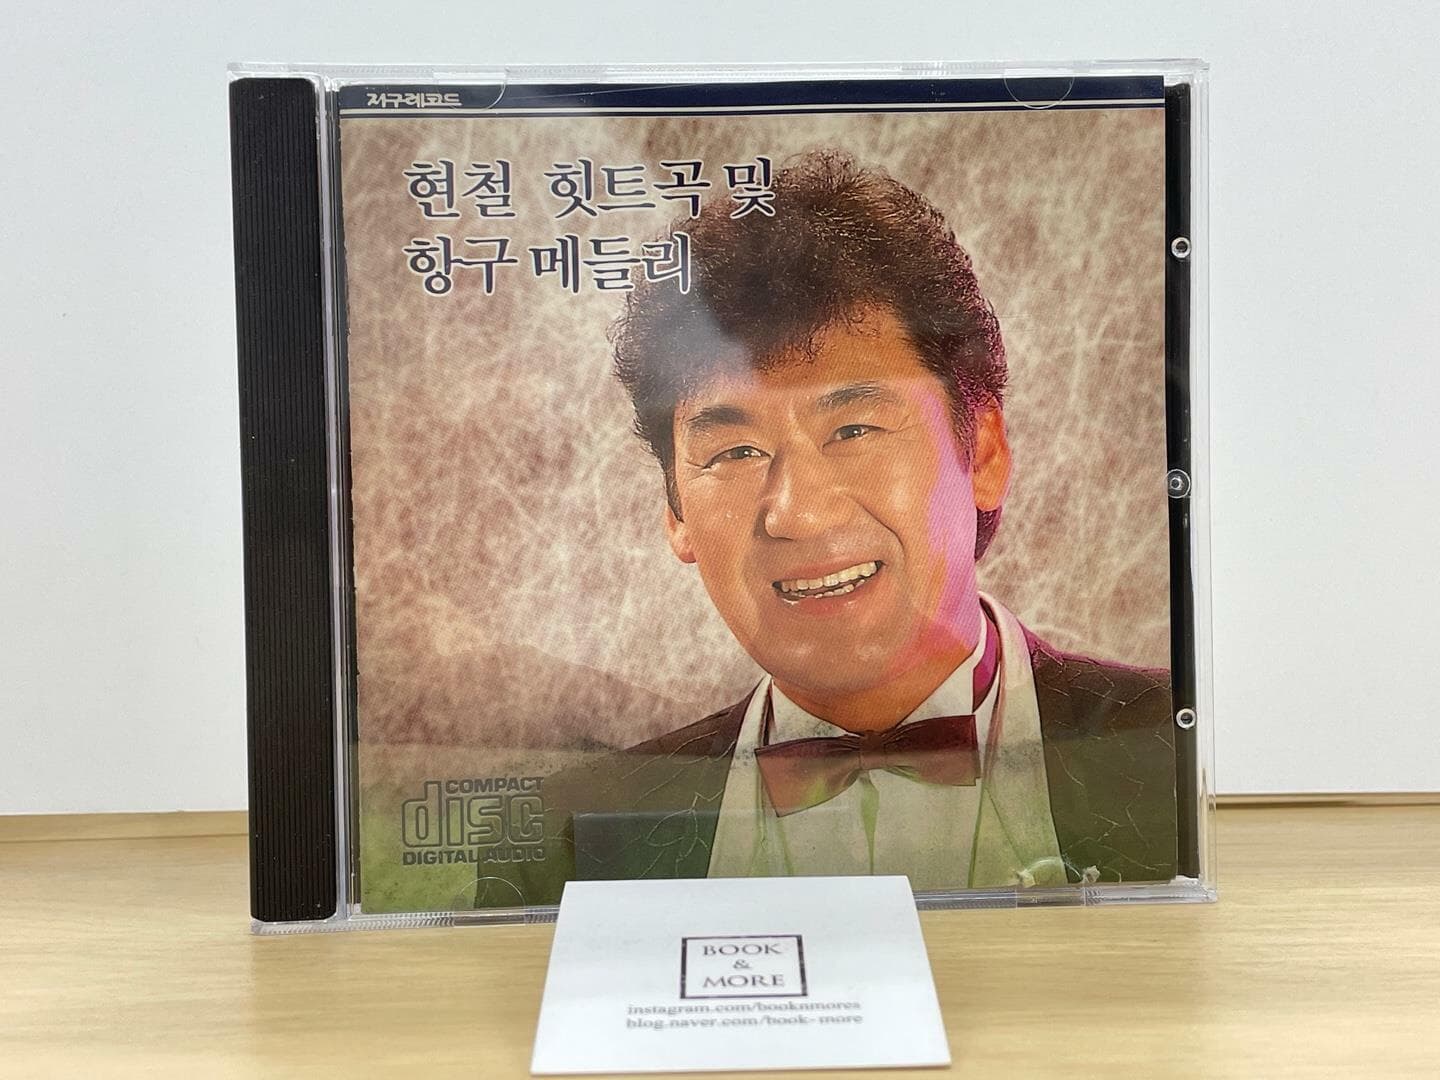 (CD) 현철 힛트곡 및 항구 메들리 / 지구레코드 / 상태 : 중 (설명과 사진 참고)